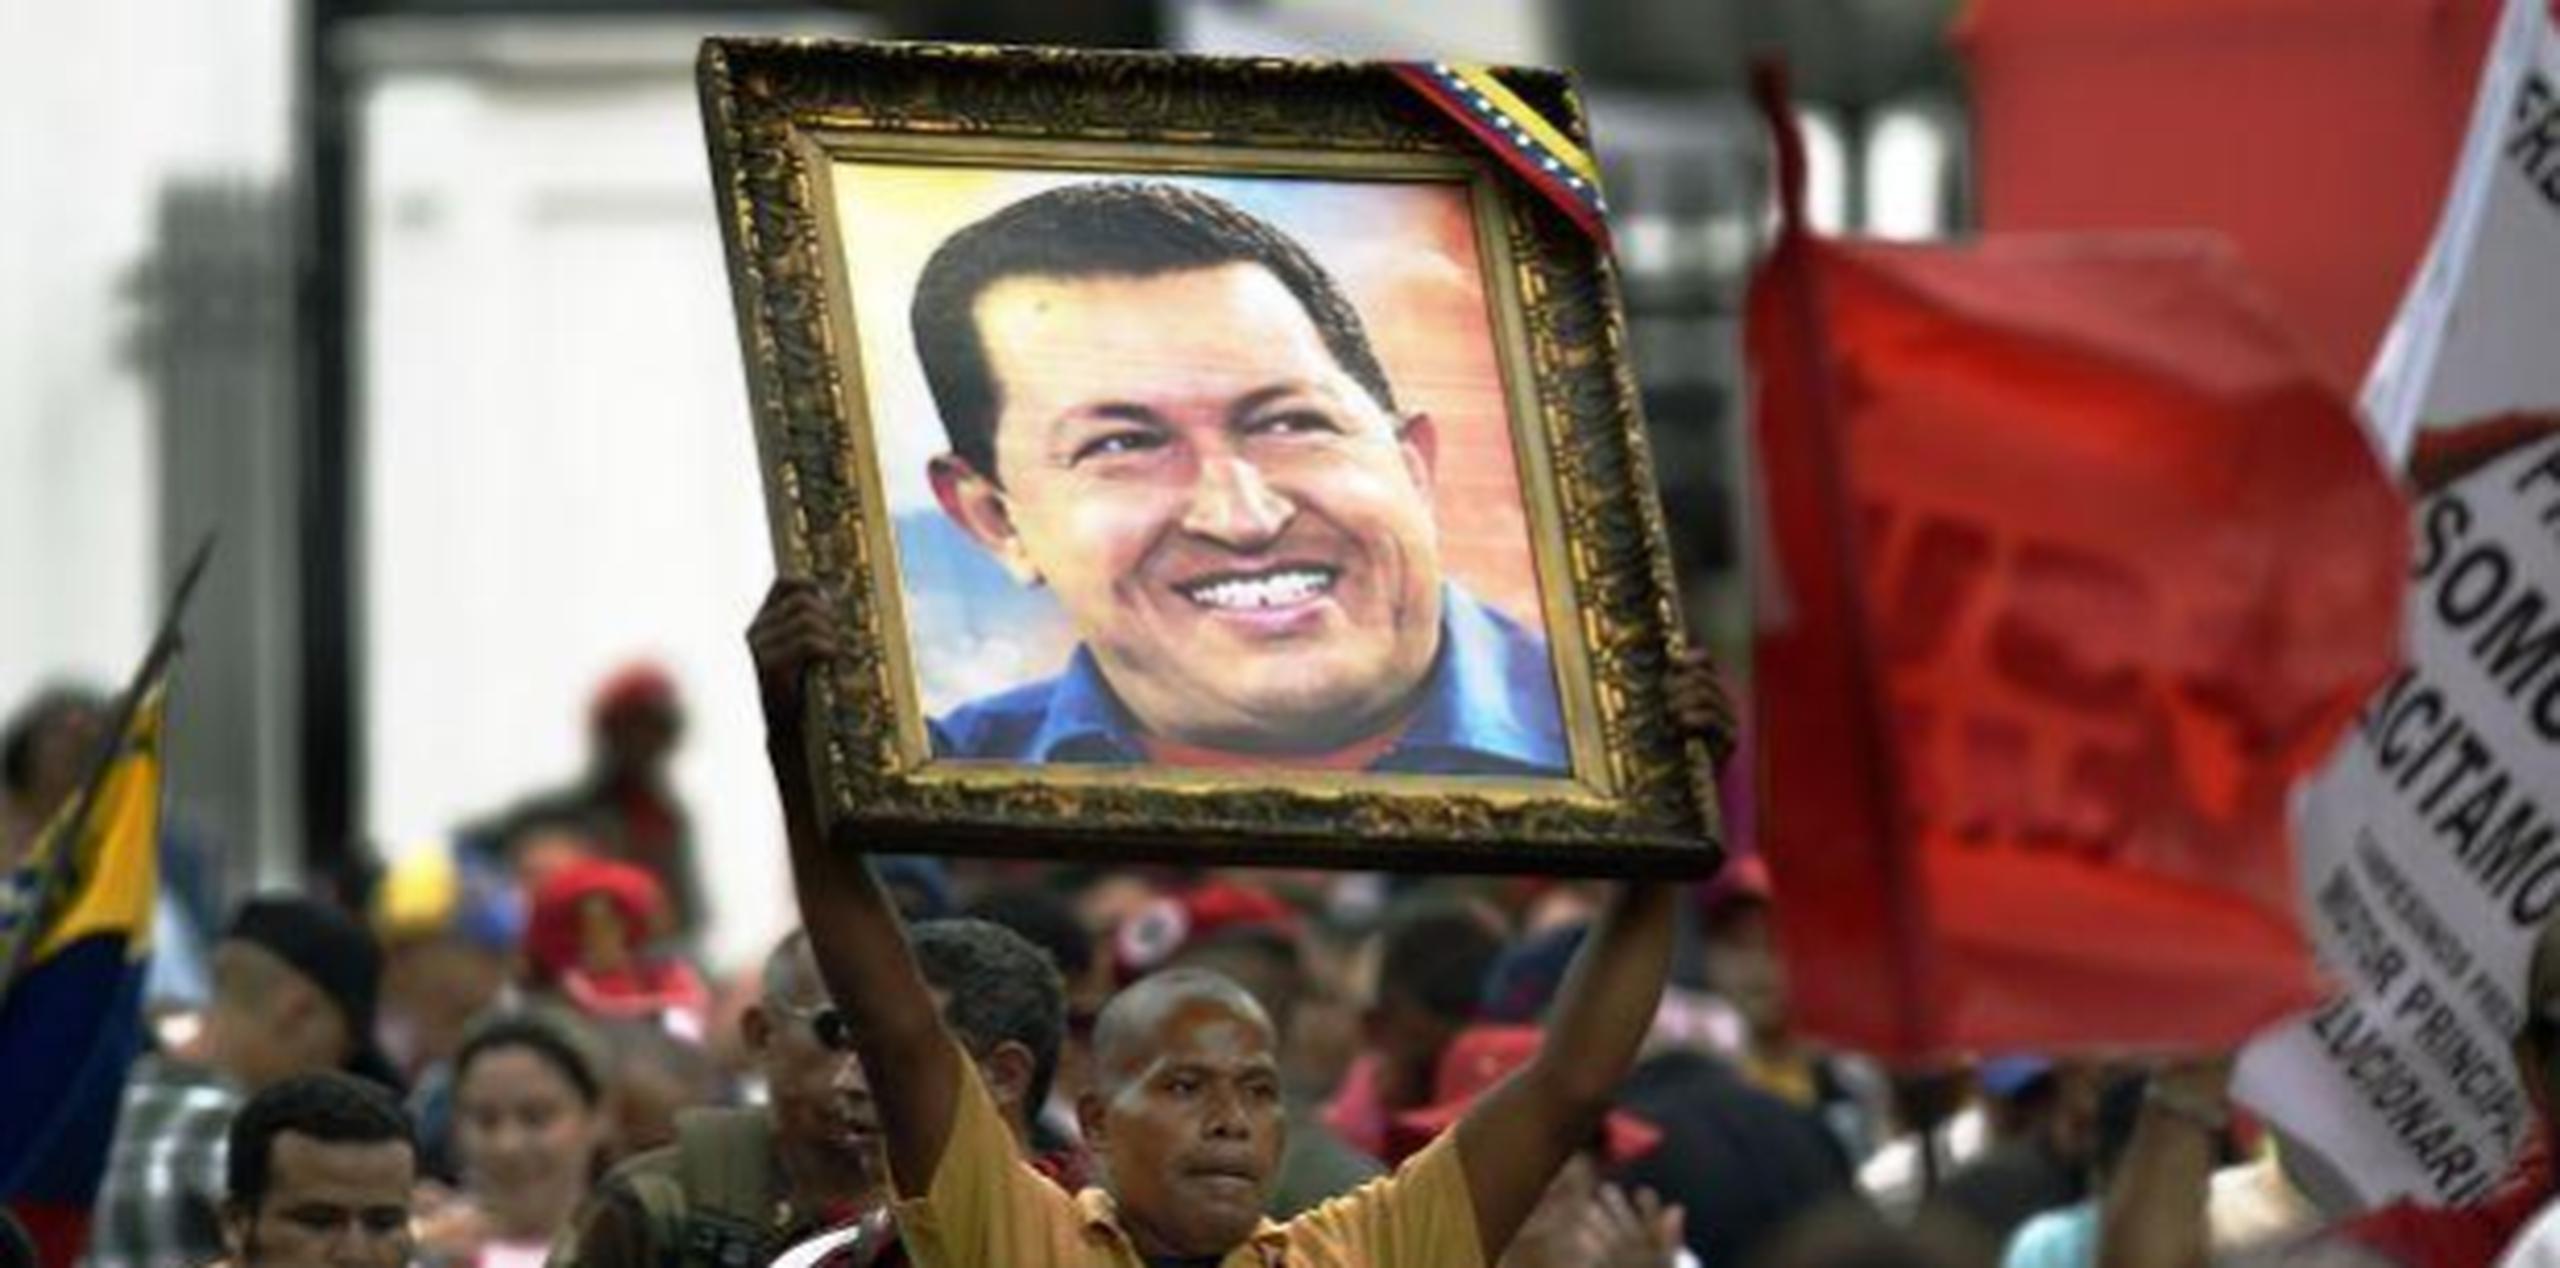 El expresidente de Venezuela Hugo Chávez murió el 5 de marzo de 2013, después de una larga lucha contra el cáncer. (GDA)